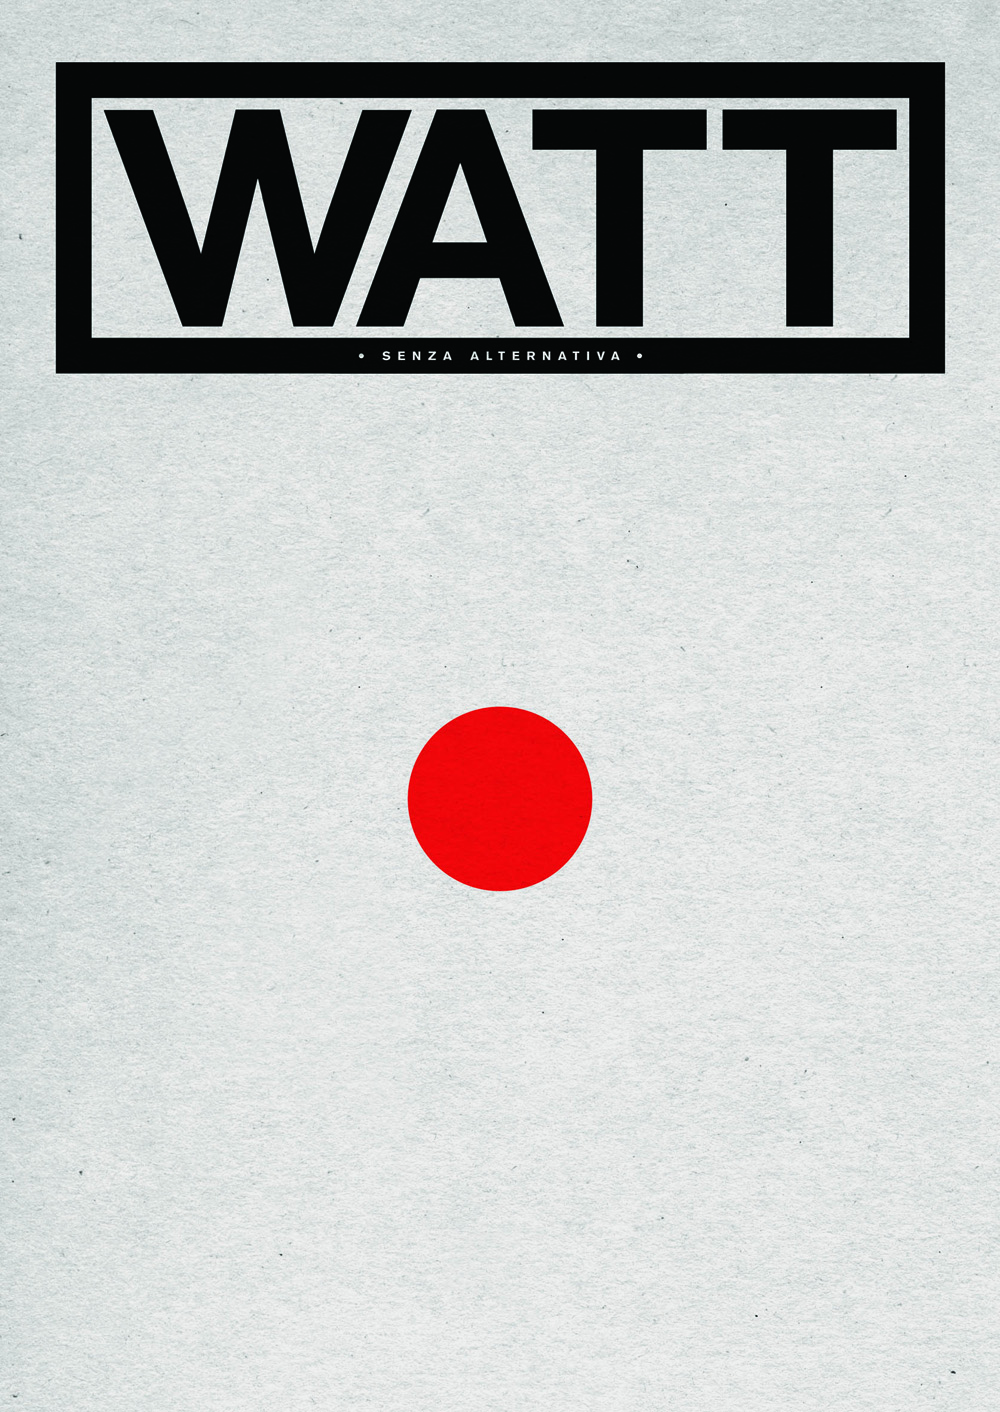 WATT_0_cover by Maurizio Ceccato